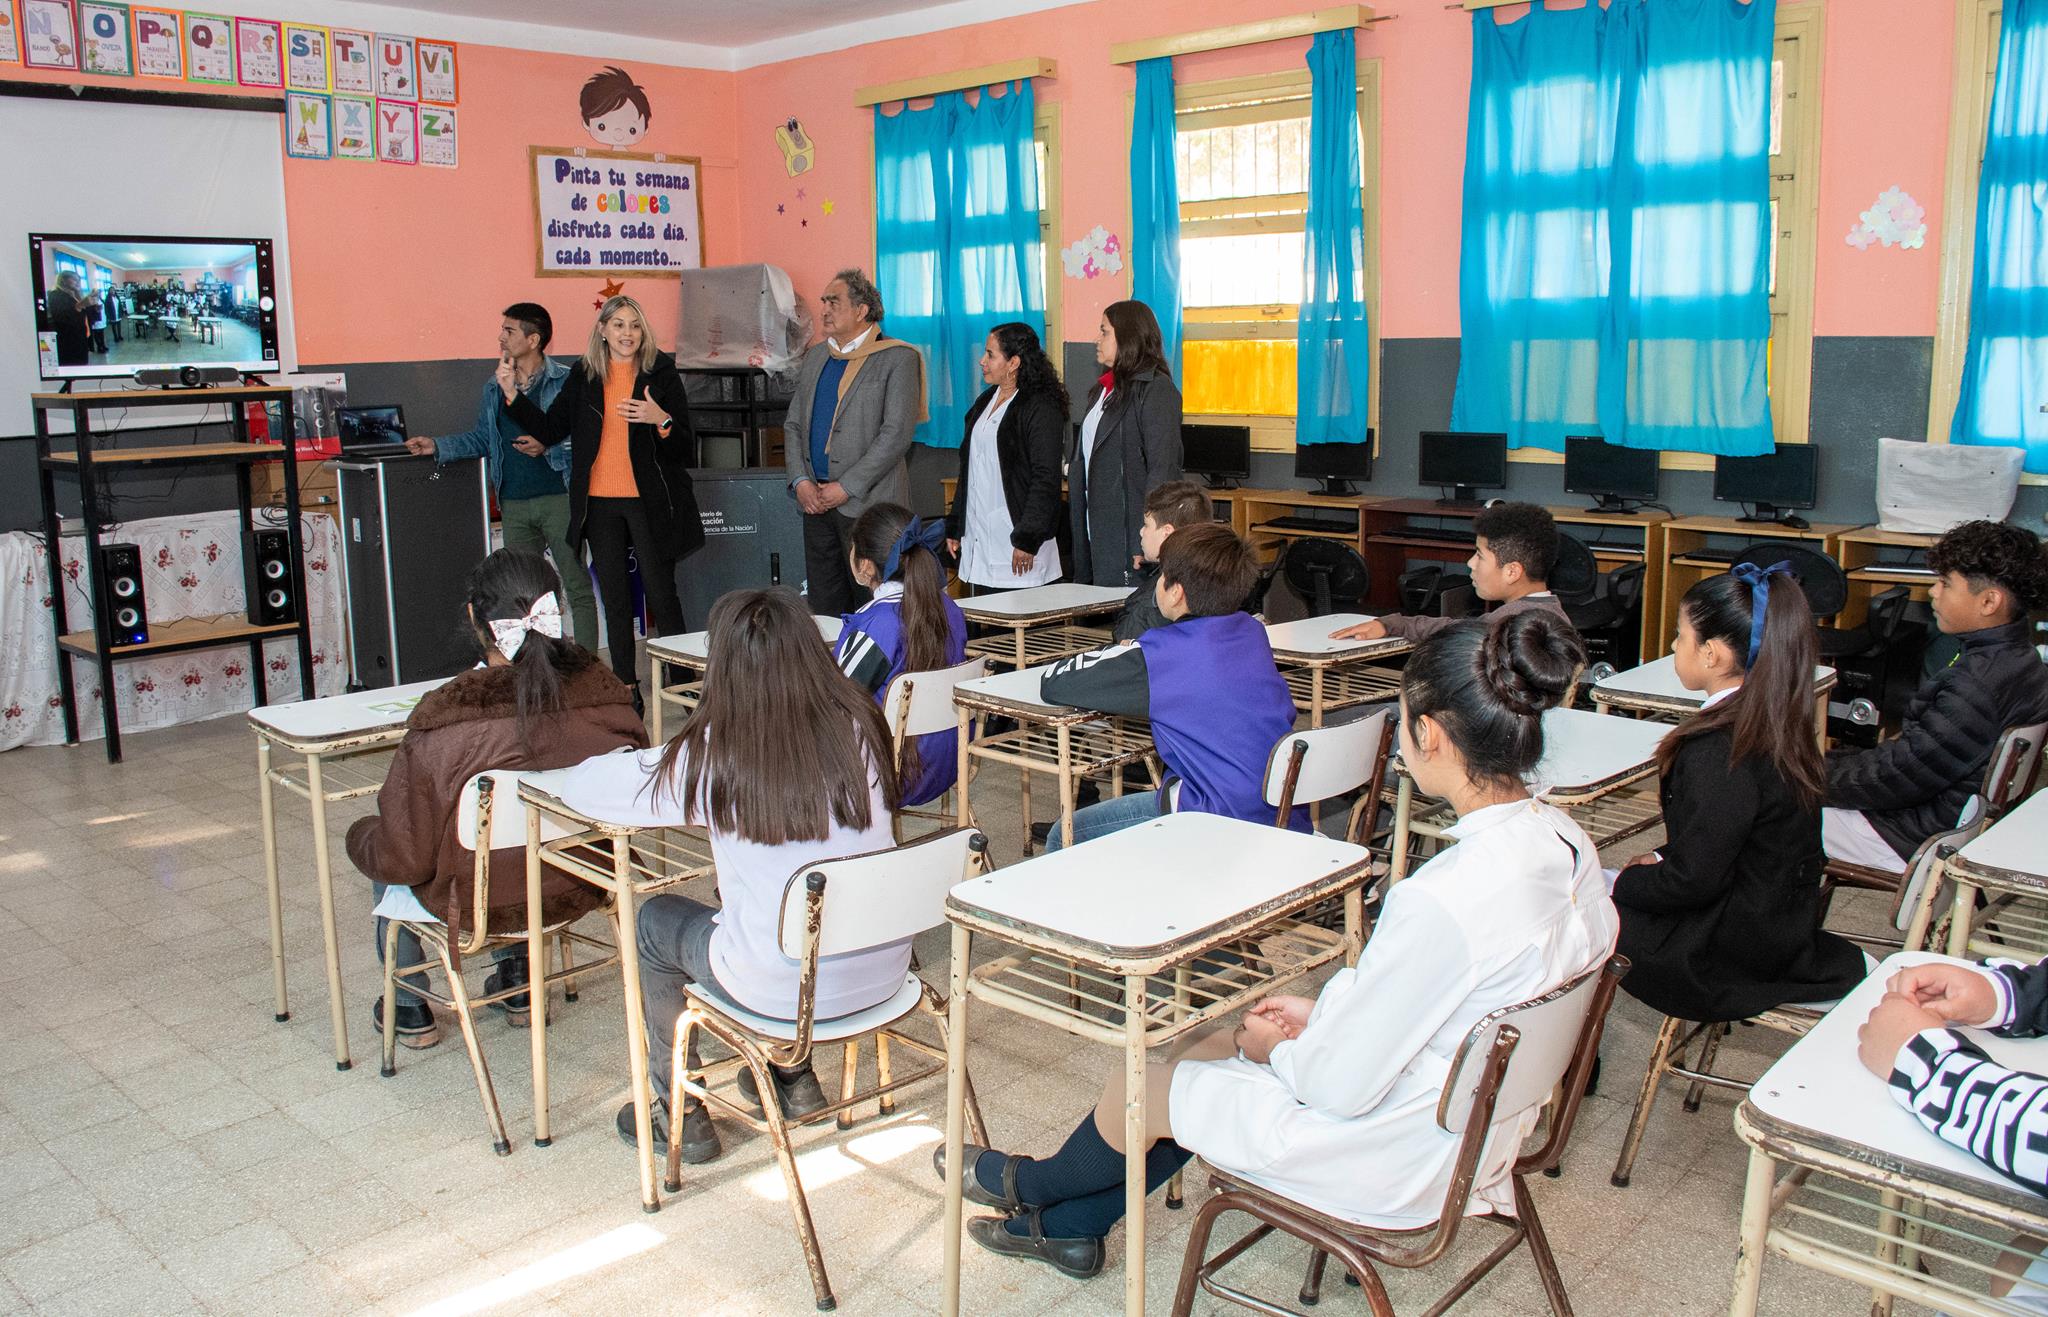 Entrega e instalación de equipamiento tecnológico para escuelas primarias de Belén que formarán parte del proyecto de clases remotas de inglés1